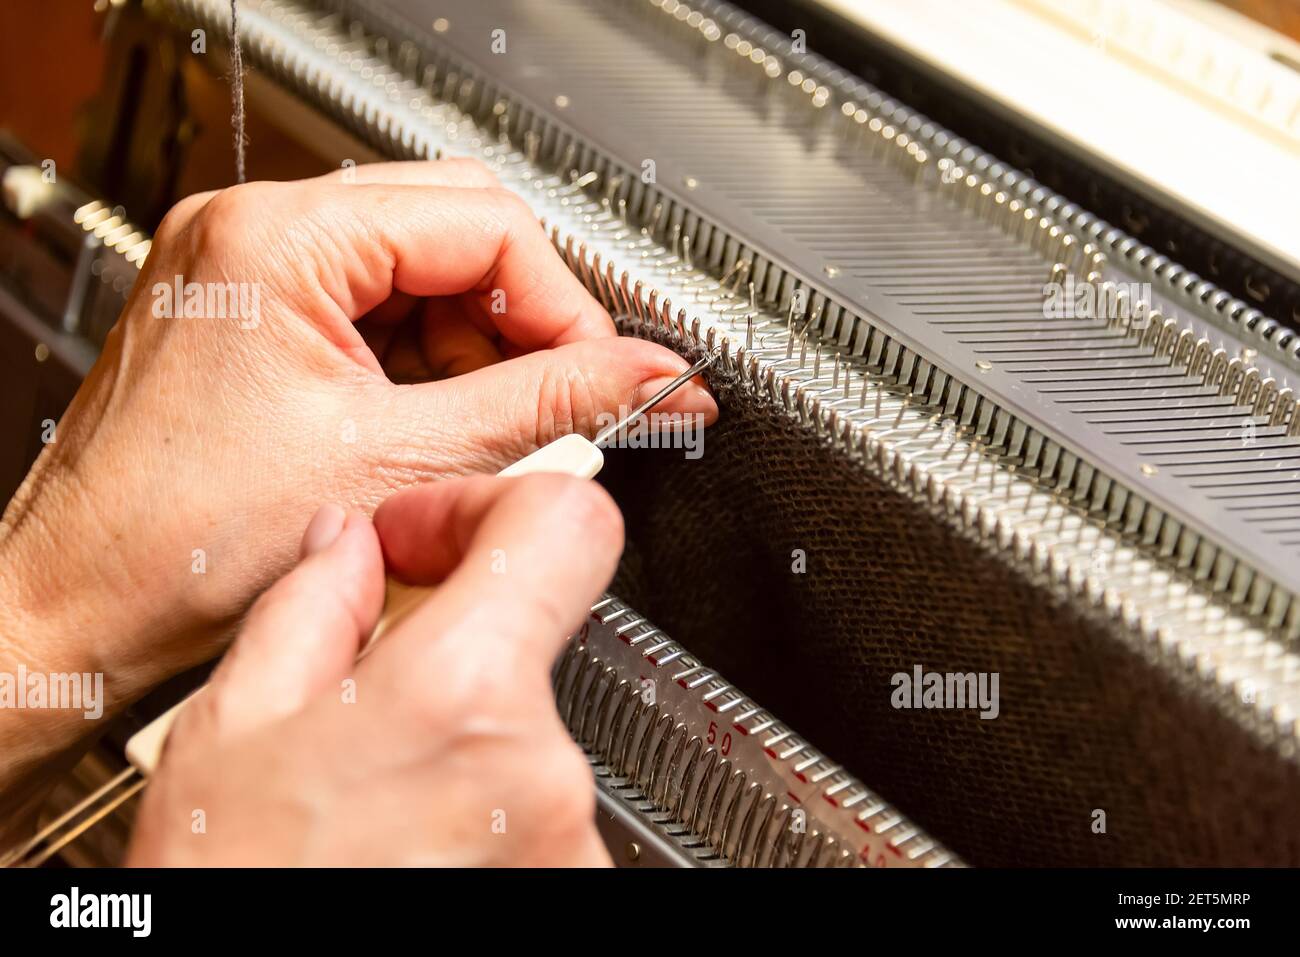 Las manos de los womans trabajan con la máquina de tejer, tejiendo como womans aficiones. Pequeña empresa de fabricación de ropa, moda lenta Foto de stock